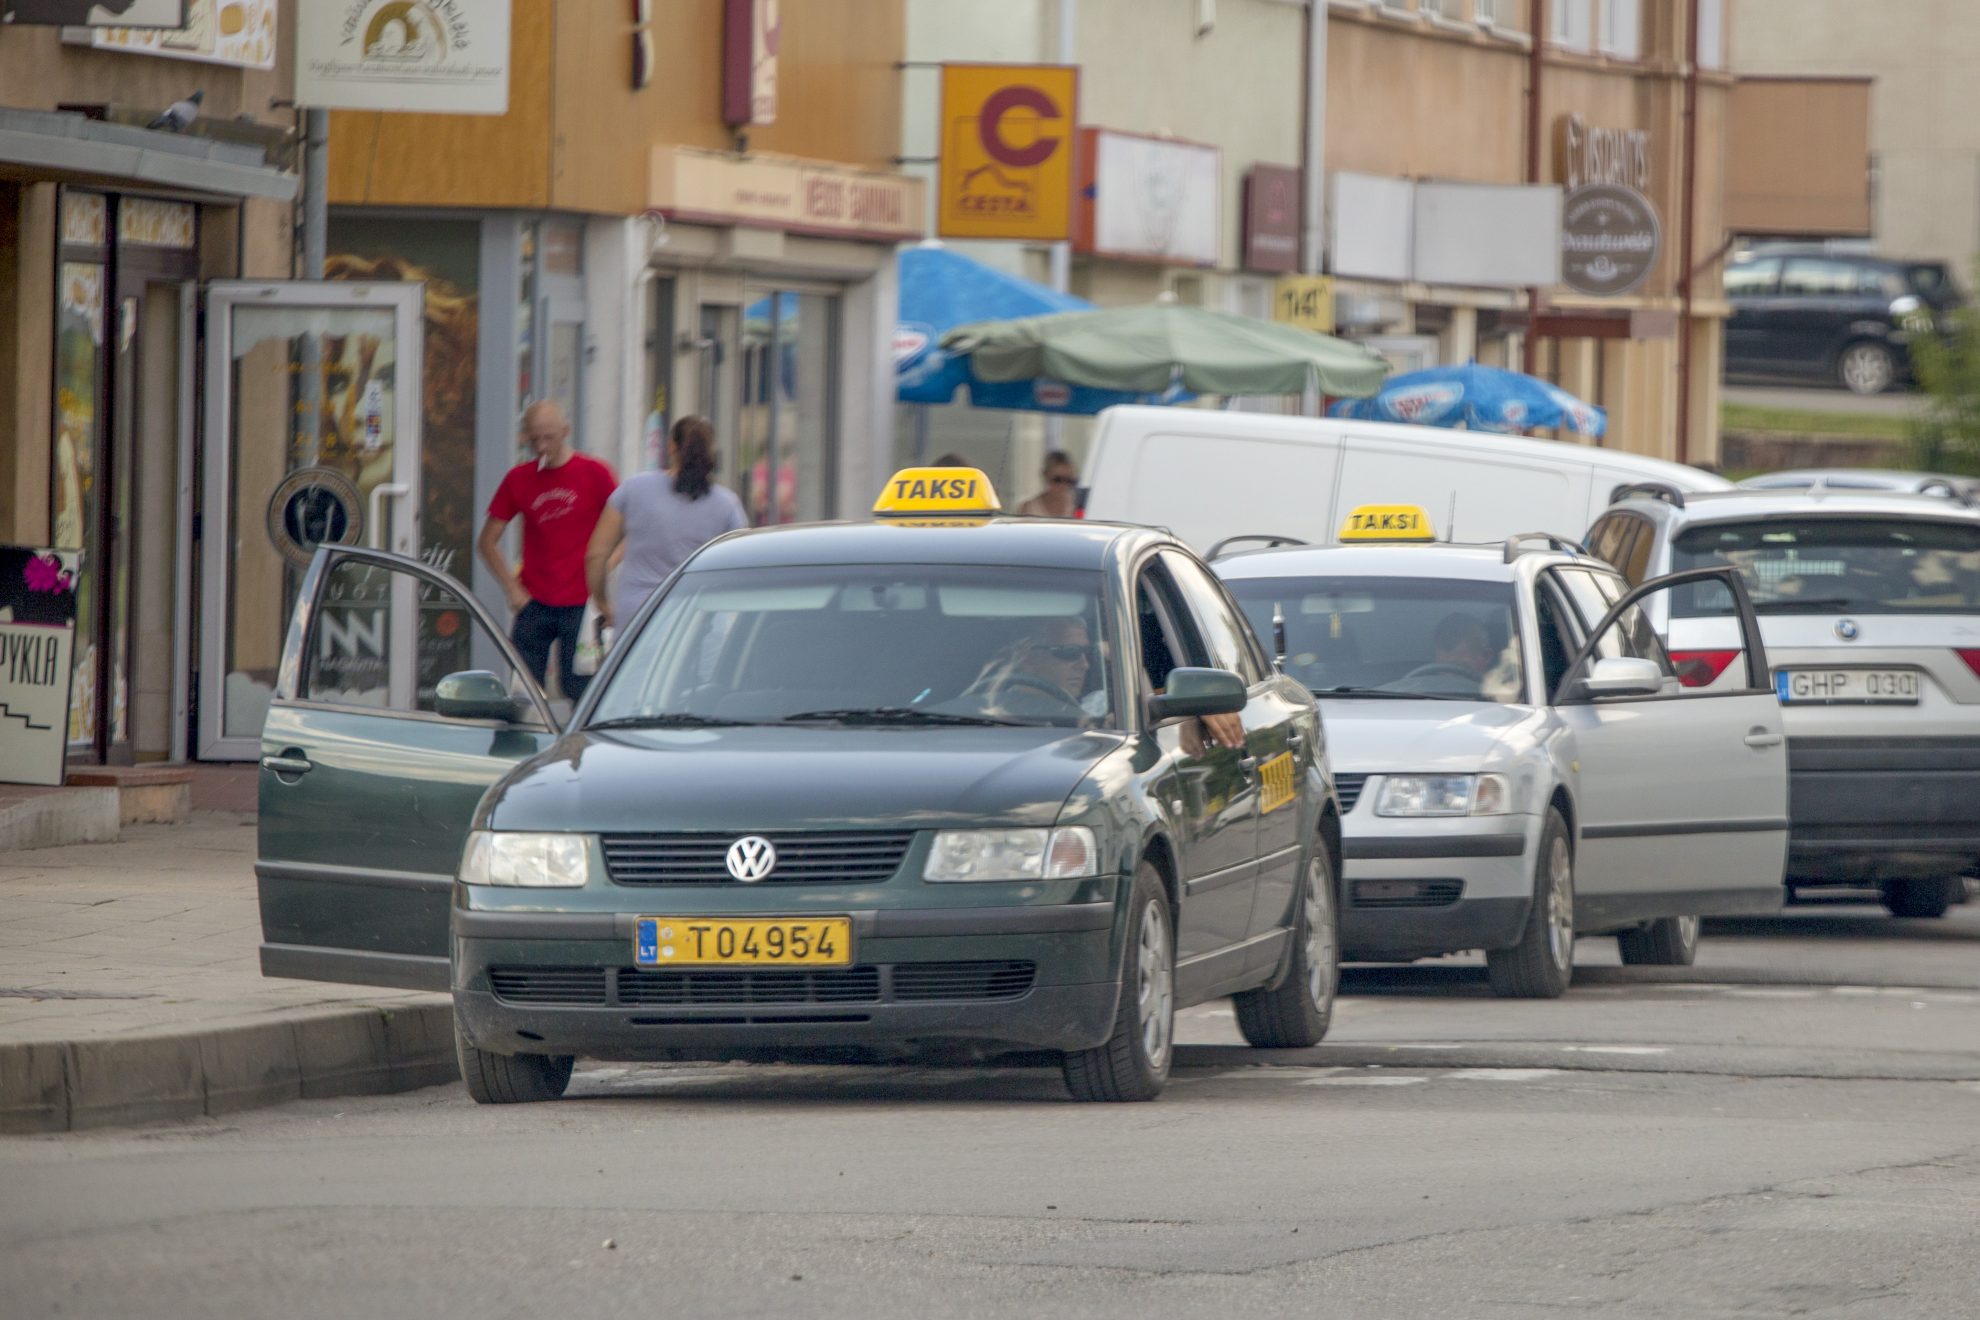 Pavėžėjimo paslaugos Panevėžyje teikiamos jau kone metus, tačiau daugelis panevėžiečių į šią naujovę vis dar žiūri nepatikliai ir mieliau renkasi taksi. V. Bulaičio nuotr.